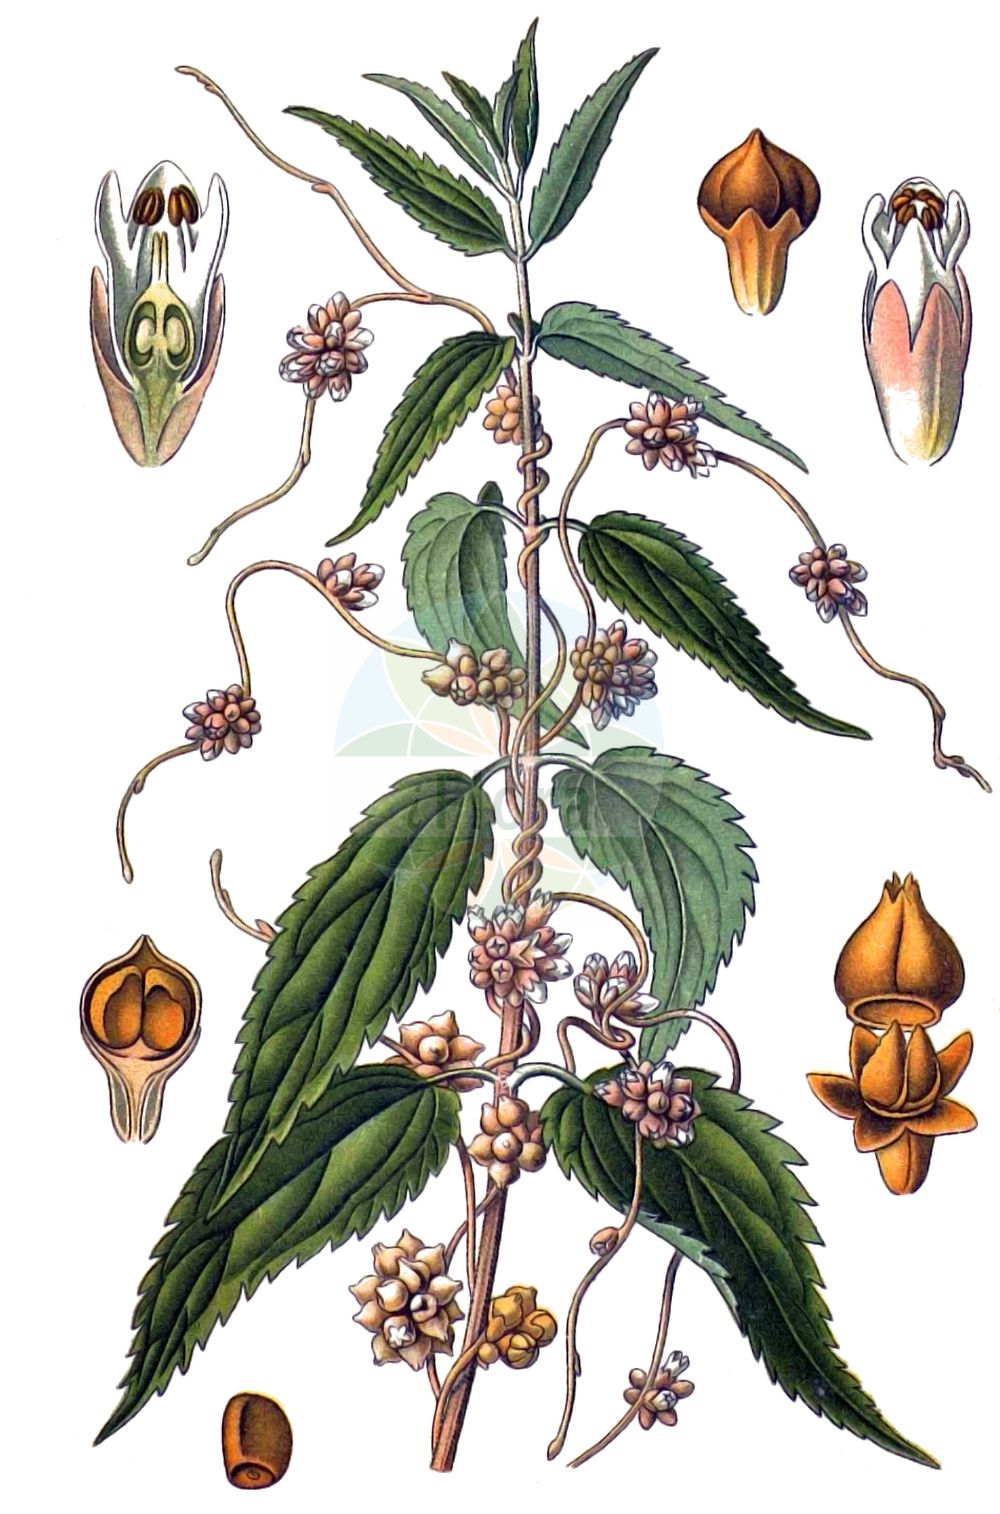 Historische Abbildung von Cuscuta epilinum (Flachs-Seide - Flax Dodder). Das Bild zeigt Blatt, Bluete, Frucht und Same. ---- Historical Drawing of Cuscuta epilinum (Flachs-Seide - Flax Dodder). The image is showing leaf, flower, fruit and seed.(Cuscuta epilinum,Flachs-Seide,Flax Dodder,Cuscuta epilinum,Flachs-Seide,Flachs-Teufelszwirn,Lein-Seide,Flax Dodder,Cuscuta,Seide,Dodder,Convolvulaceae,Windengewächse,Bindweed family,Blatt,Bluete,Frucht,Same,leaf,flower,fruit,seed,Masclef (1890-1893))